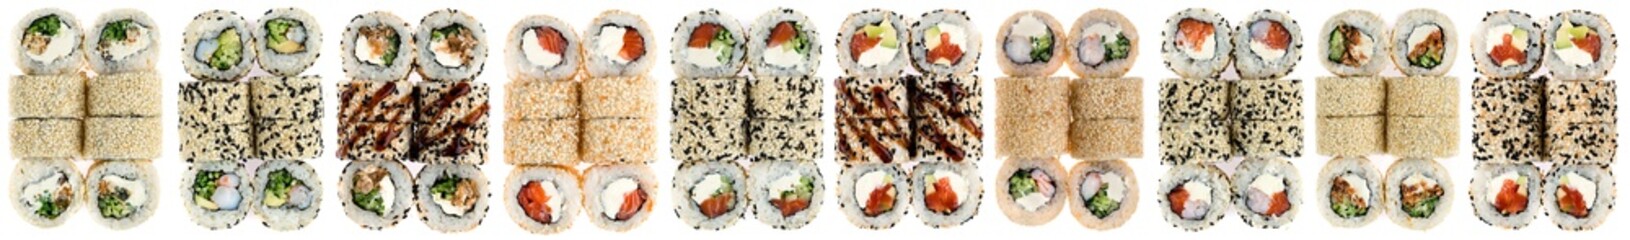 diferent type Sushi sets isolated on white background